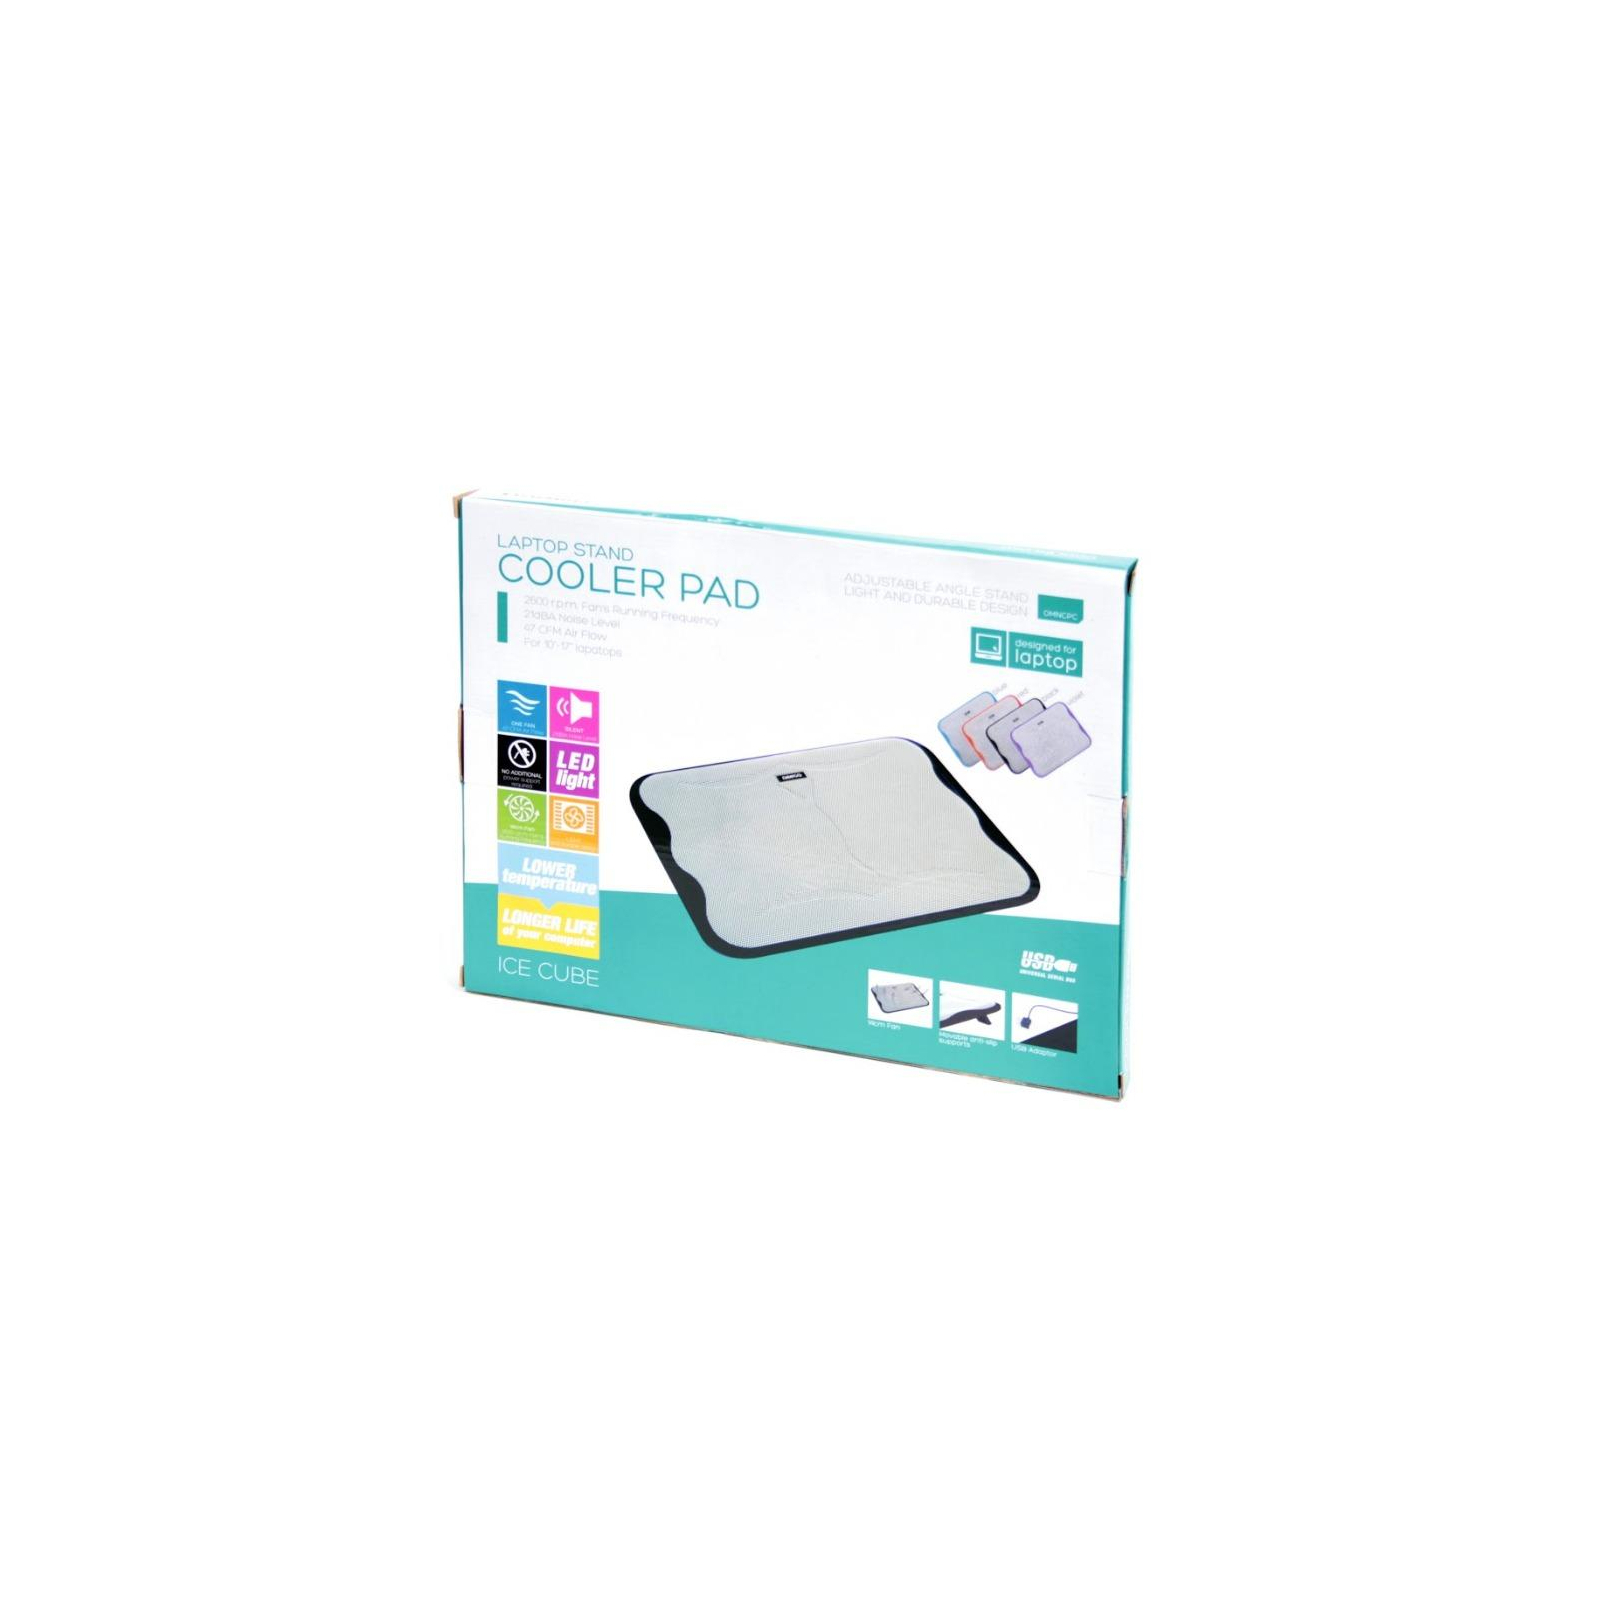 Подставка для ноутбука Omega Laptop Cooler pad "ICE CUBE" 14cm fan USB port black (OMNCPC) изображение 5